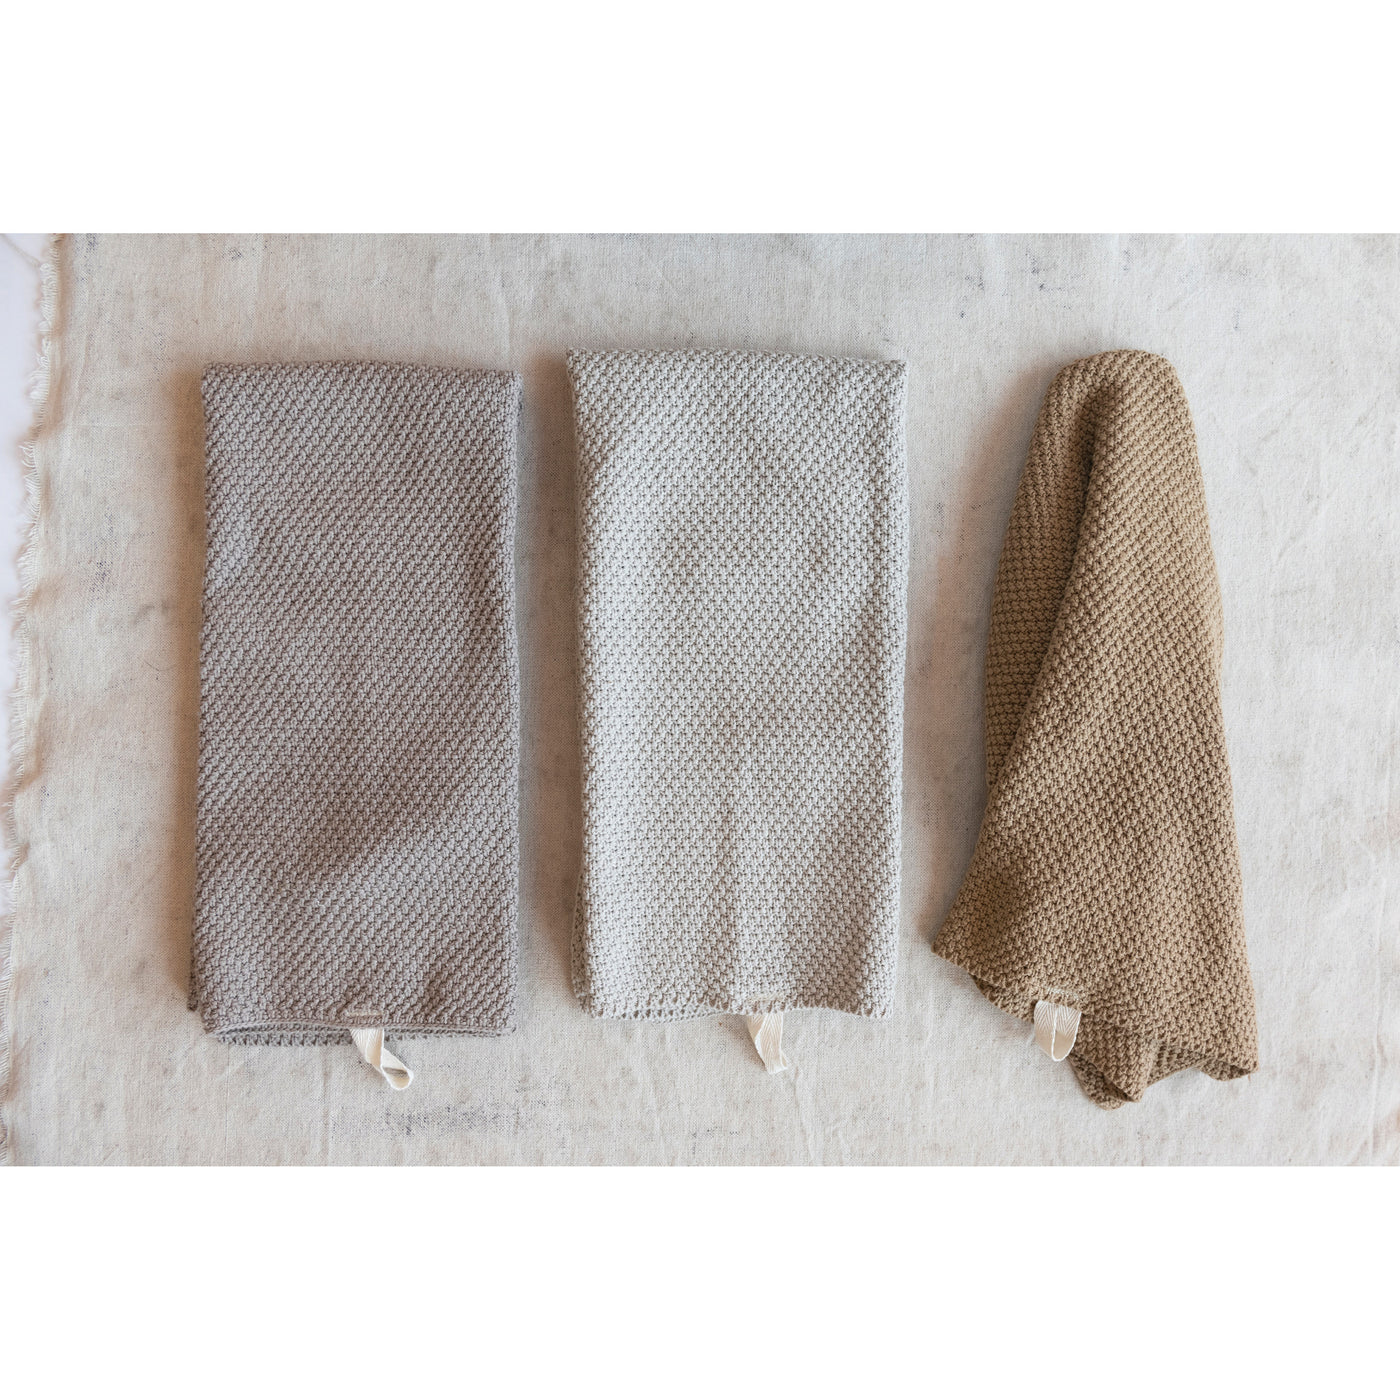 Cotton Knit Tea Towel Set